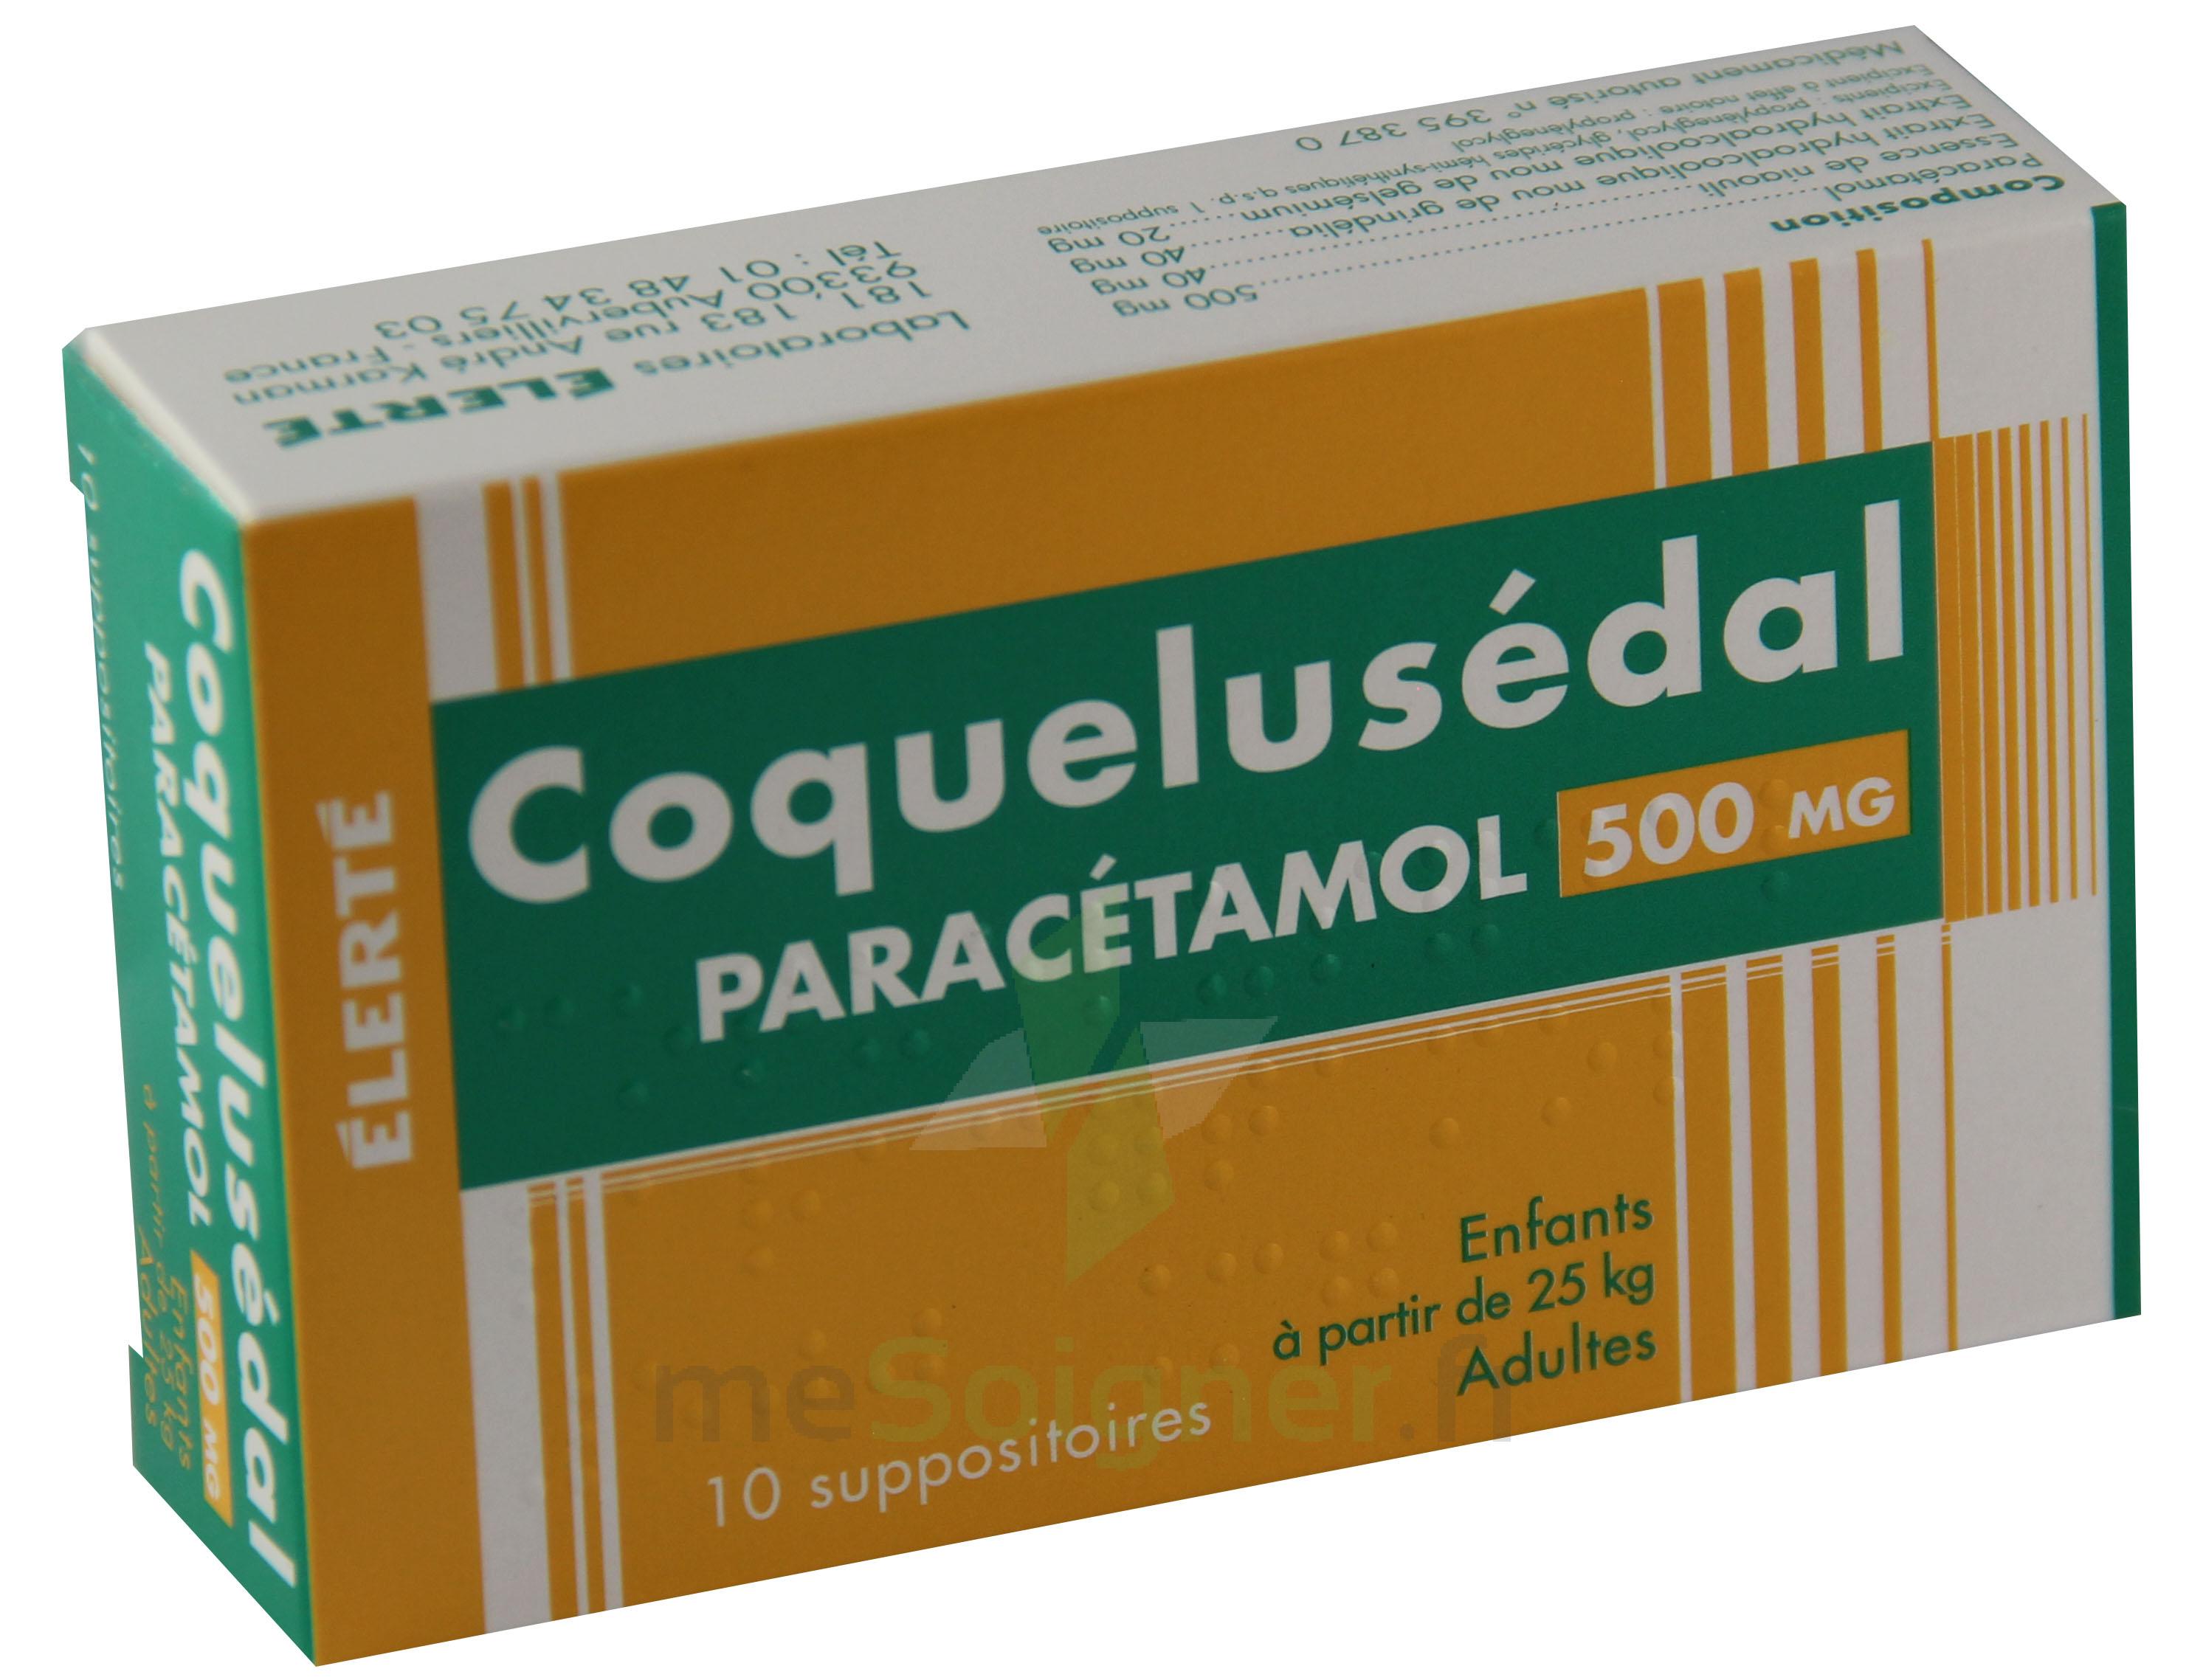 Mesoigner Coquelusedal Paracetamol 500 Mg Suppositoire Paracetamol Niaouli Grindelia Gelsemium